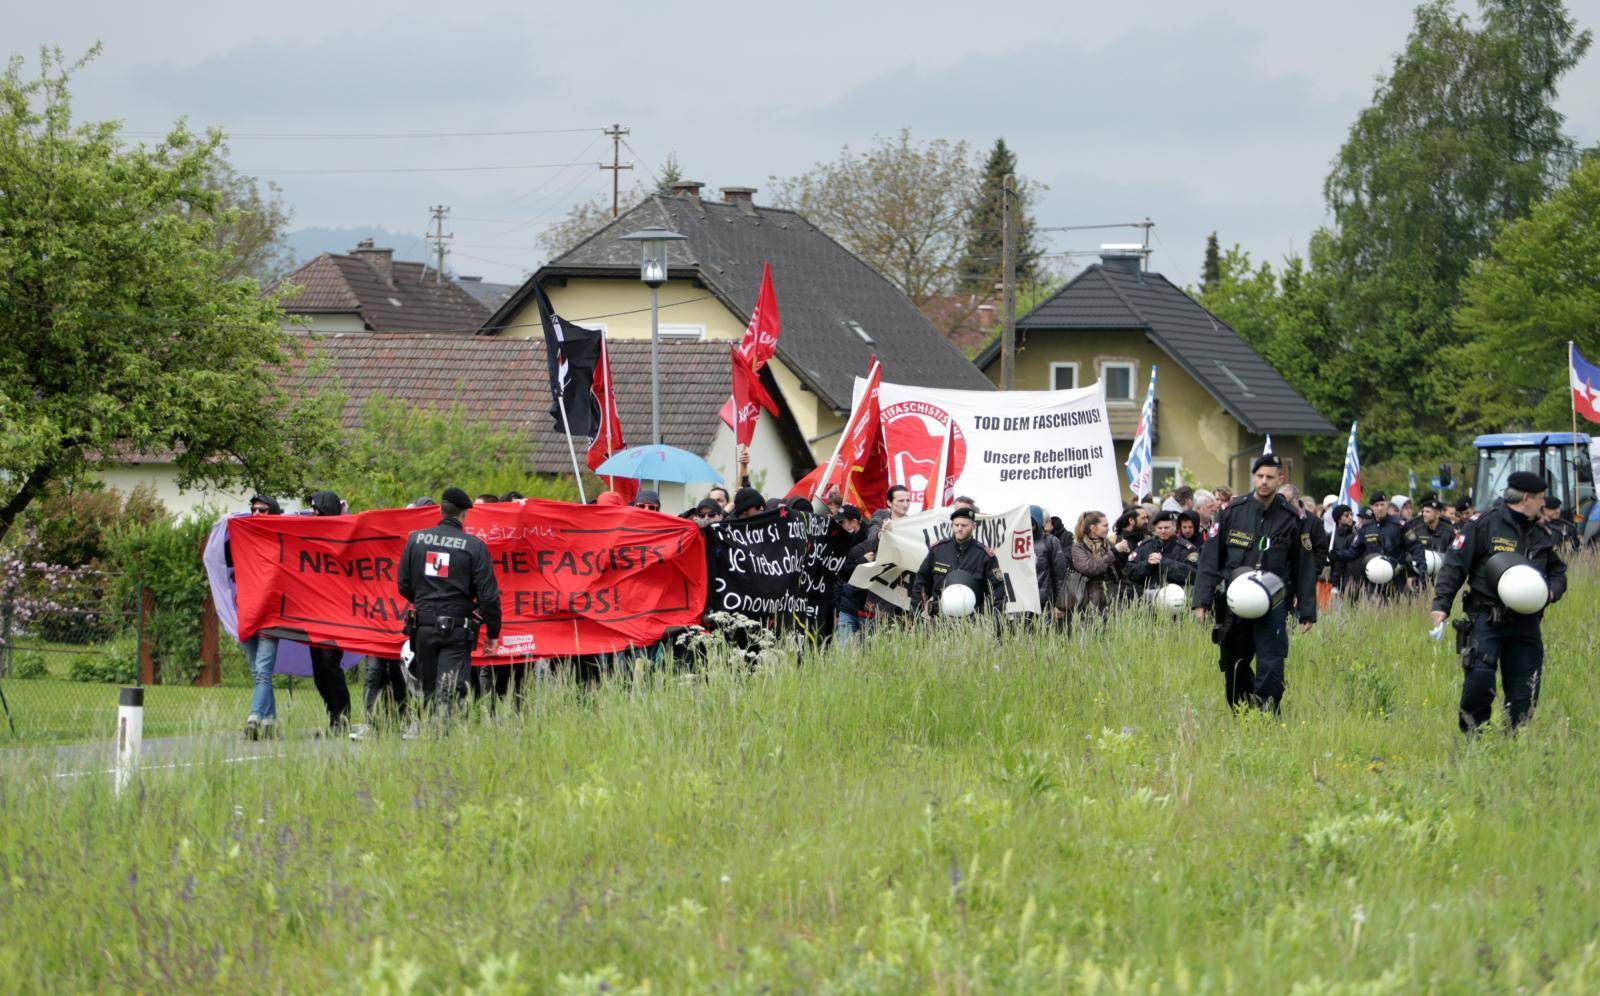 Incident u Bleiburgu: Priveli su čovjeka zbog uzdignute desnice